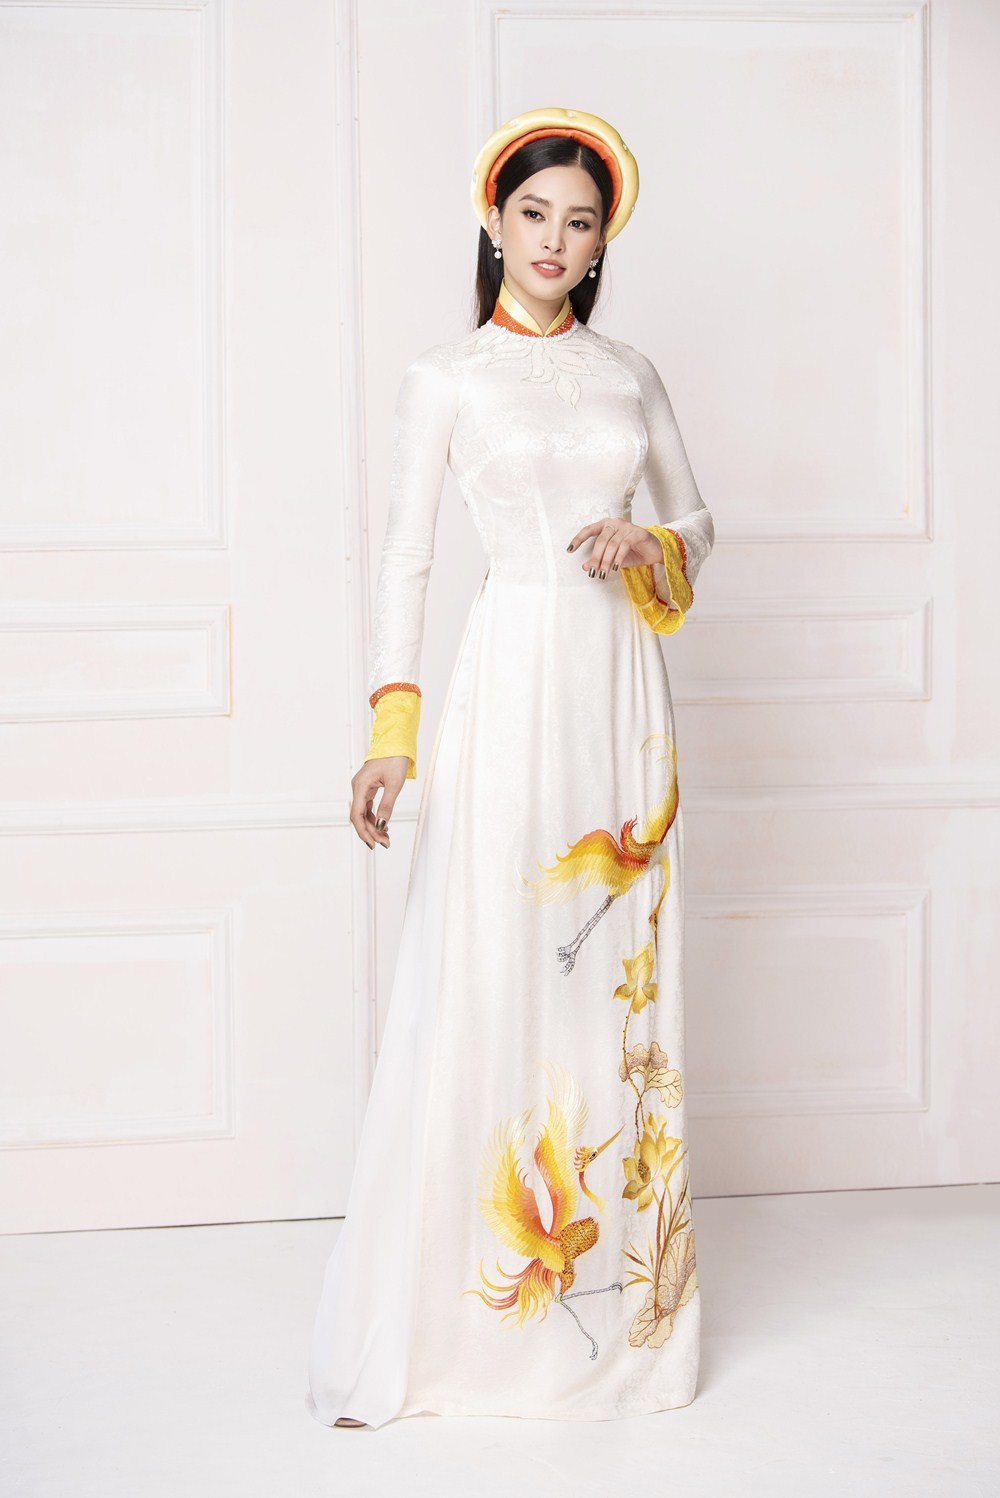 Hoa hậu Tiểu Vy hóa cô dâu e ấp với áo dài